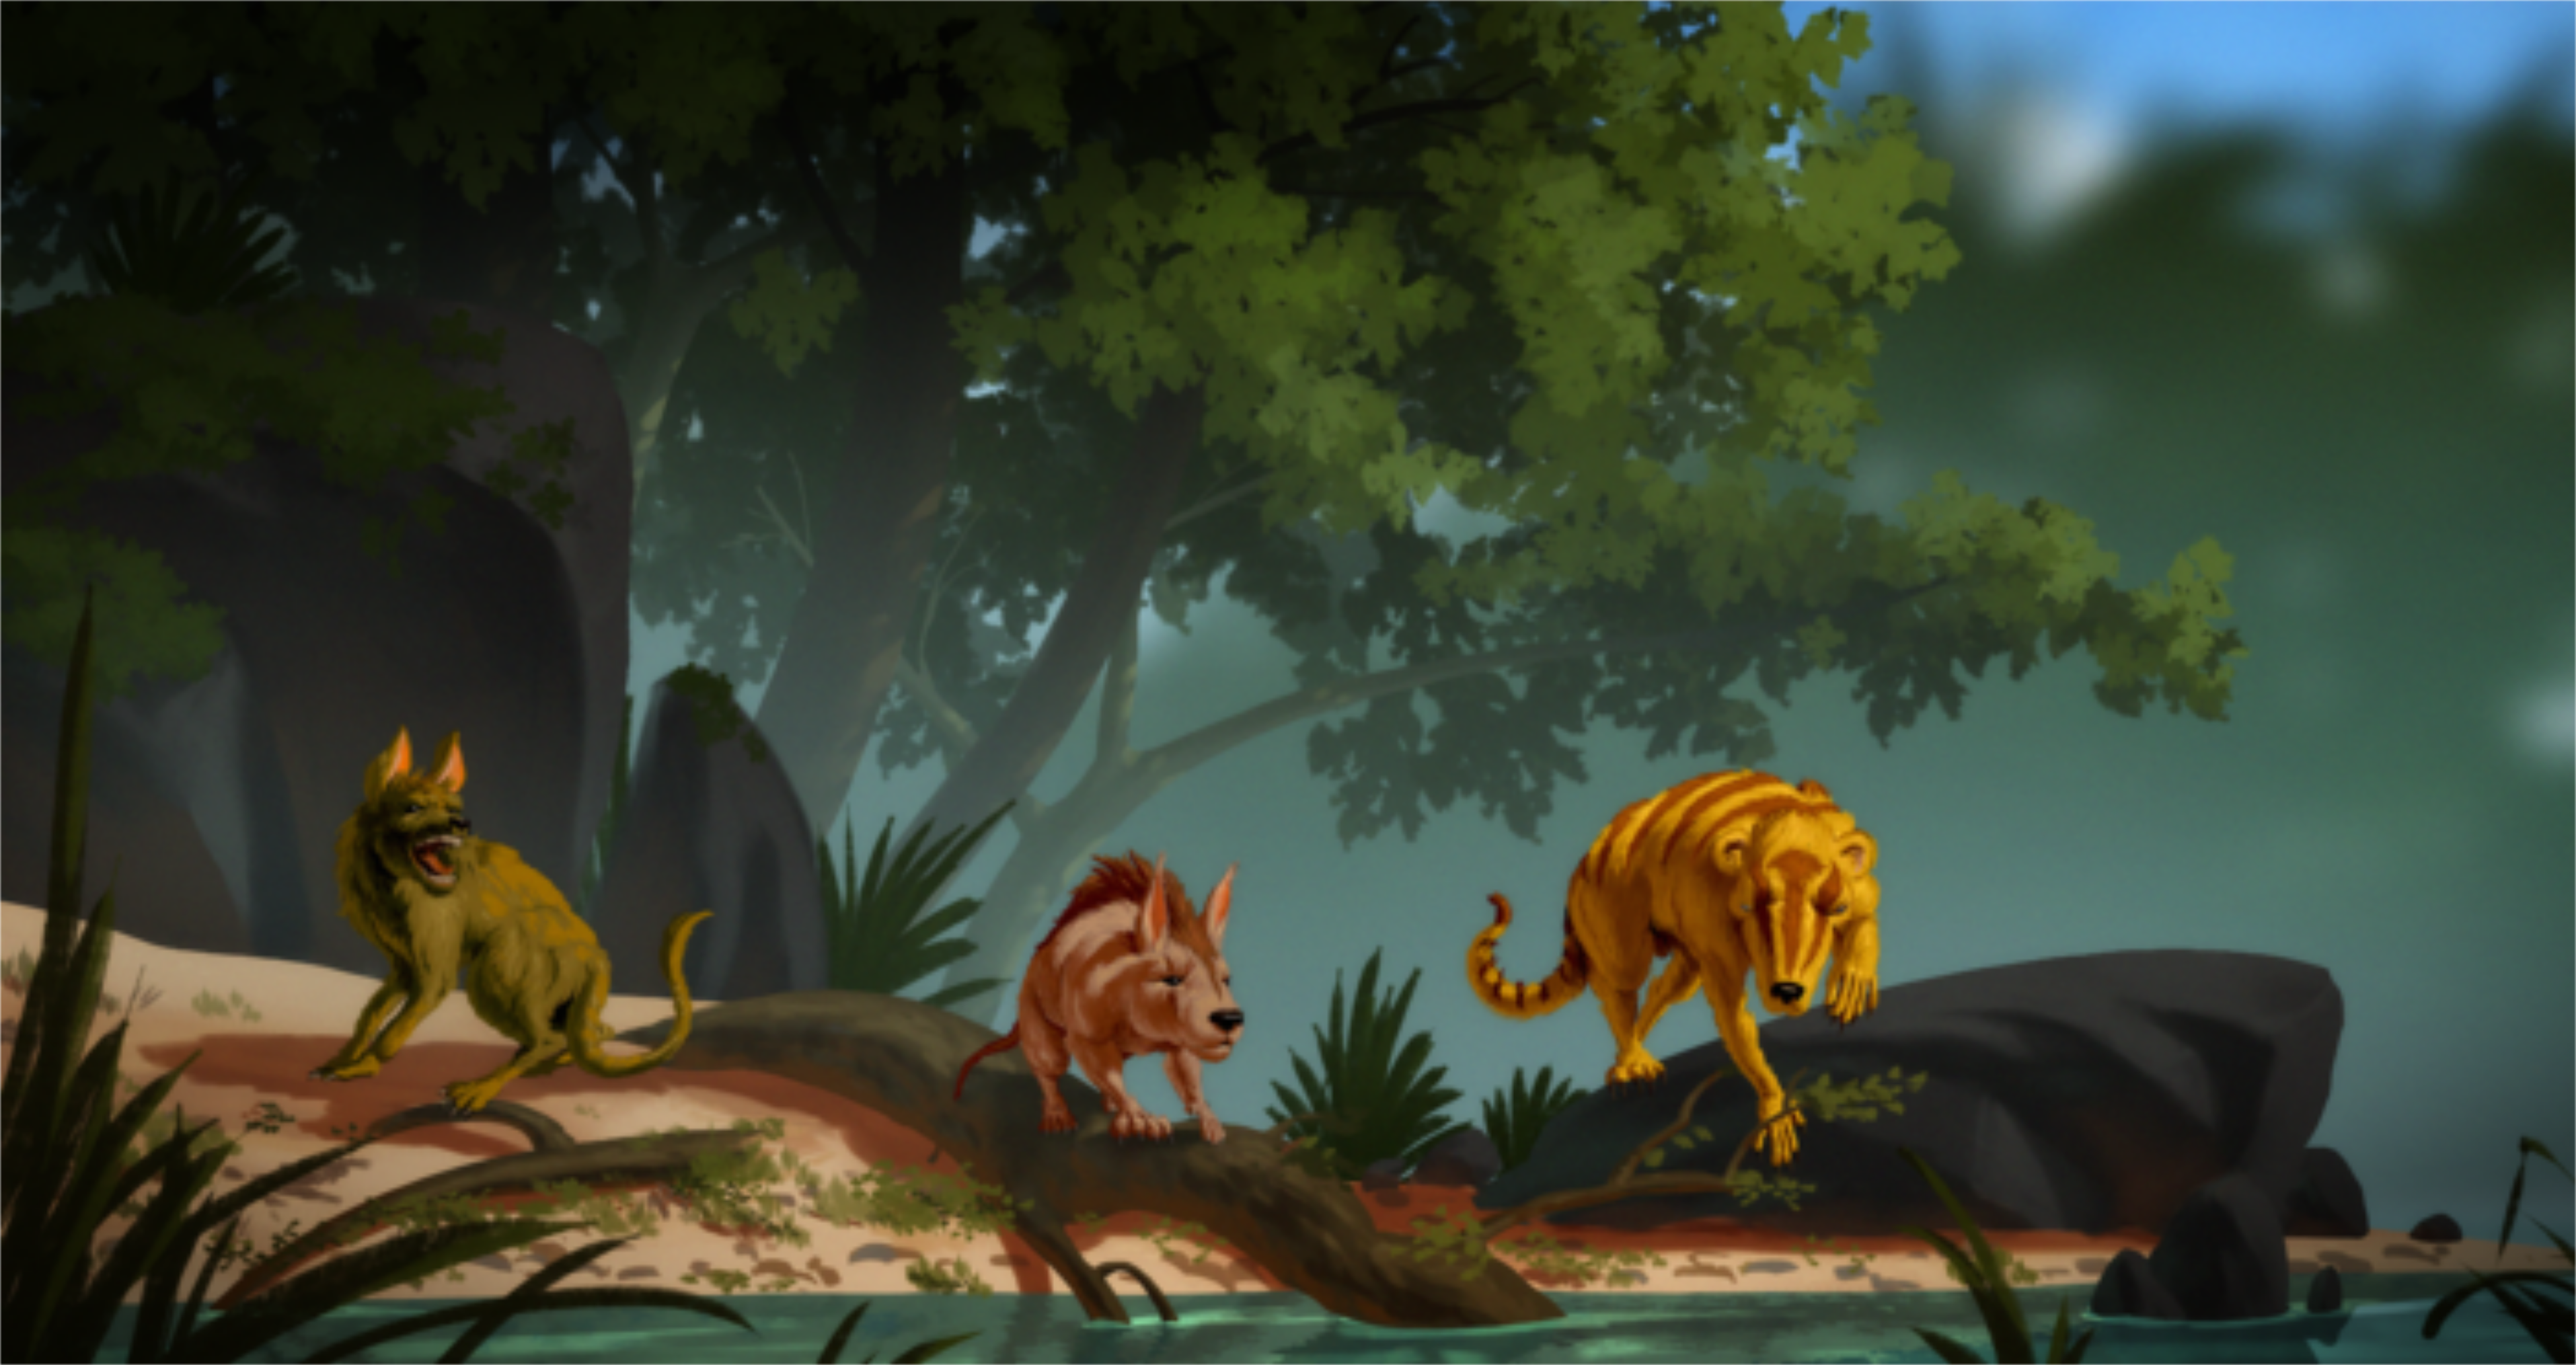 Vue d'artiste de trois nouvelles espèces de mammifères du Paléogène. De gauche à droite : Conacodon hettingeri, Miniconus jeanninae et Beornus honeyi. © Banana Art Studio